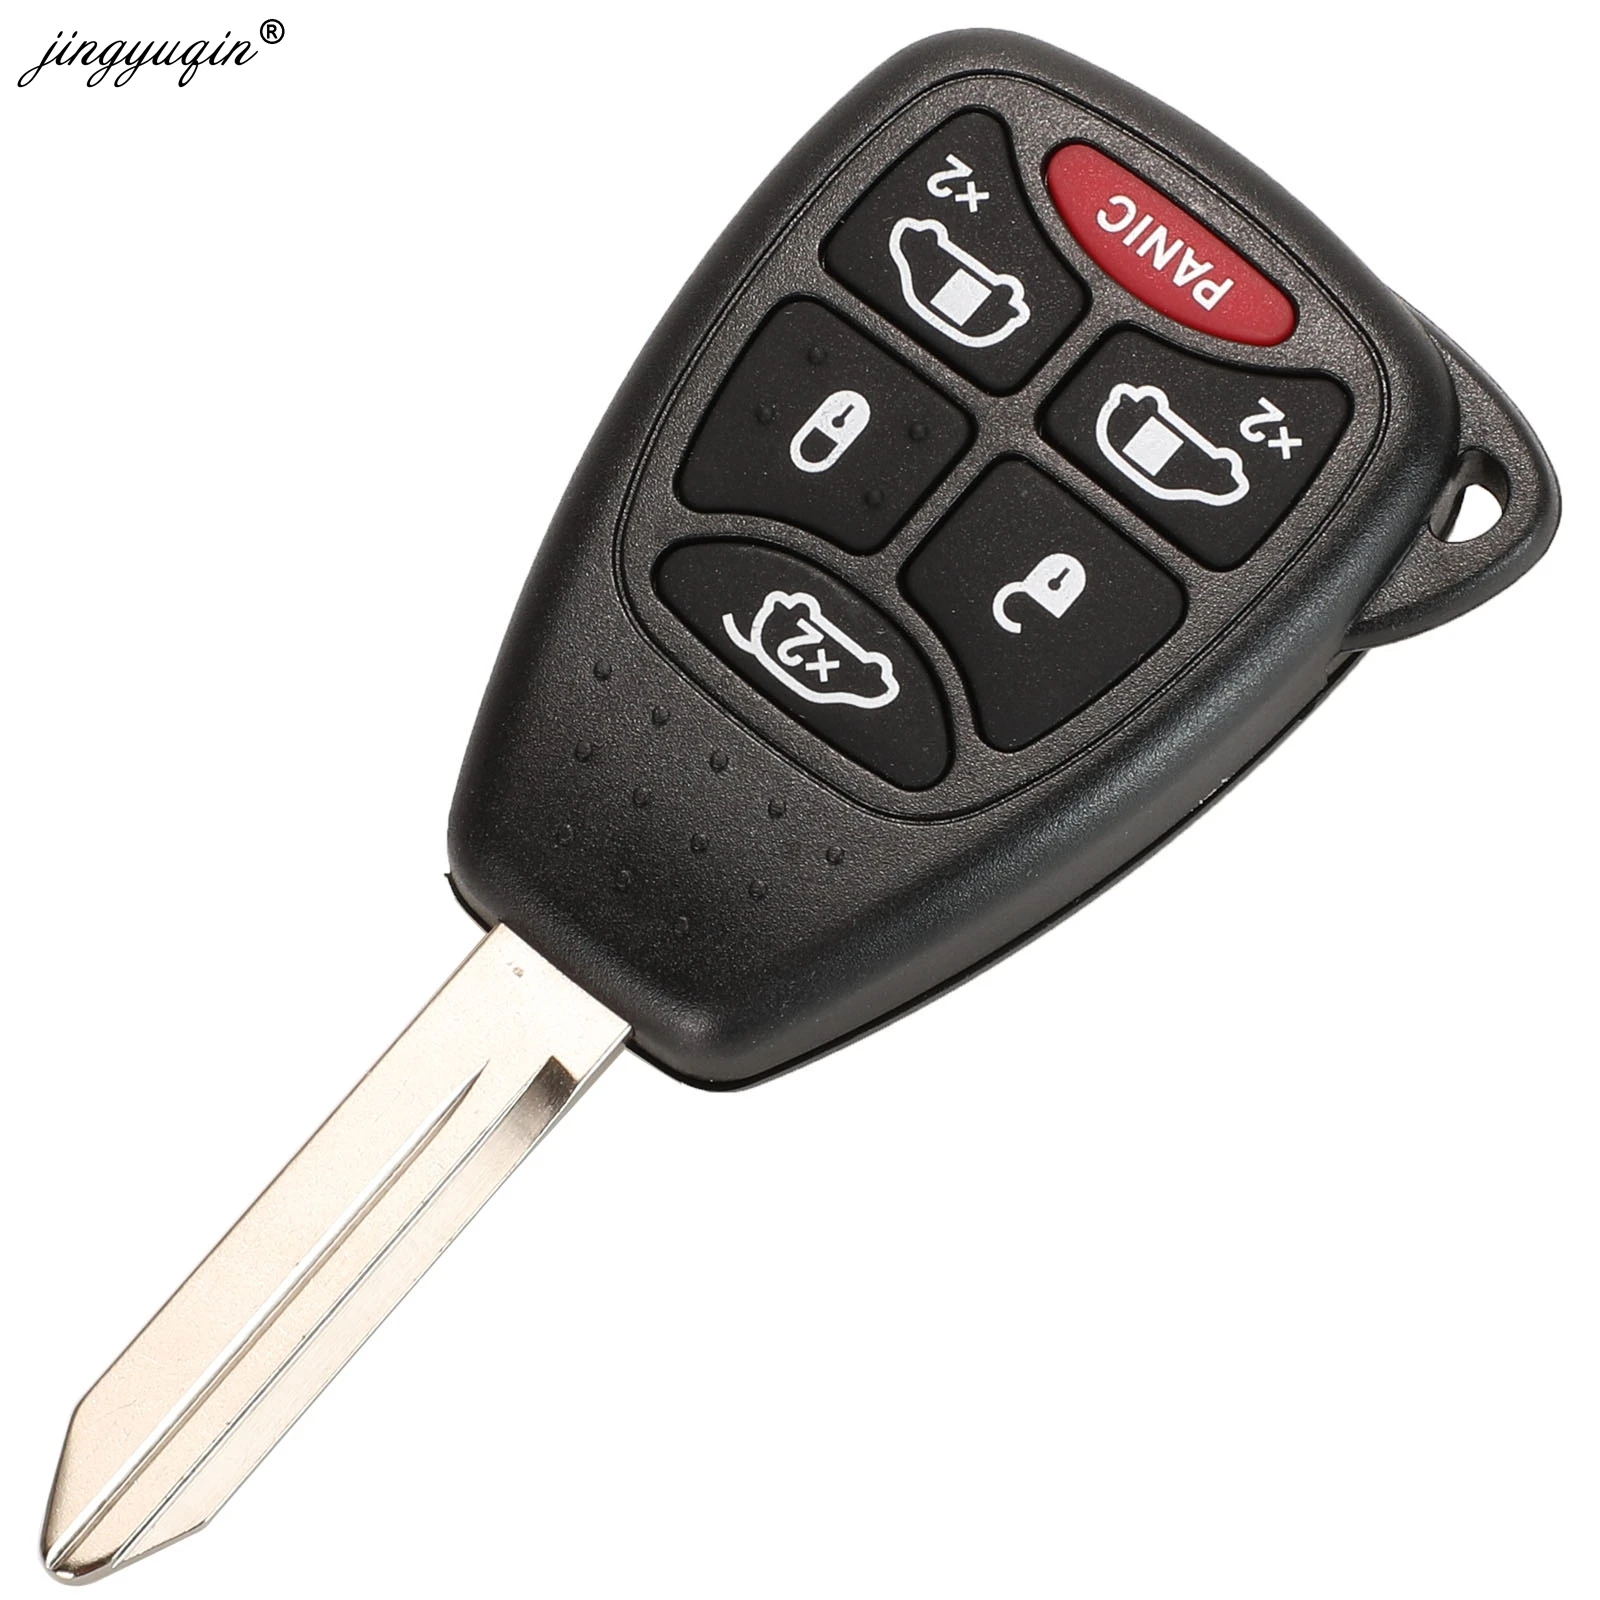 Auto Key Funk Fernbedienung Funkschlüssel 4 Tasten+Panic für Chrysler Dodge A367 